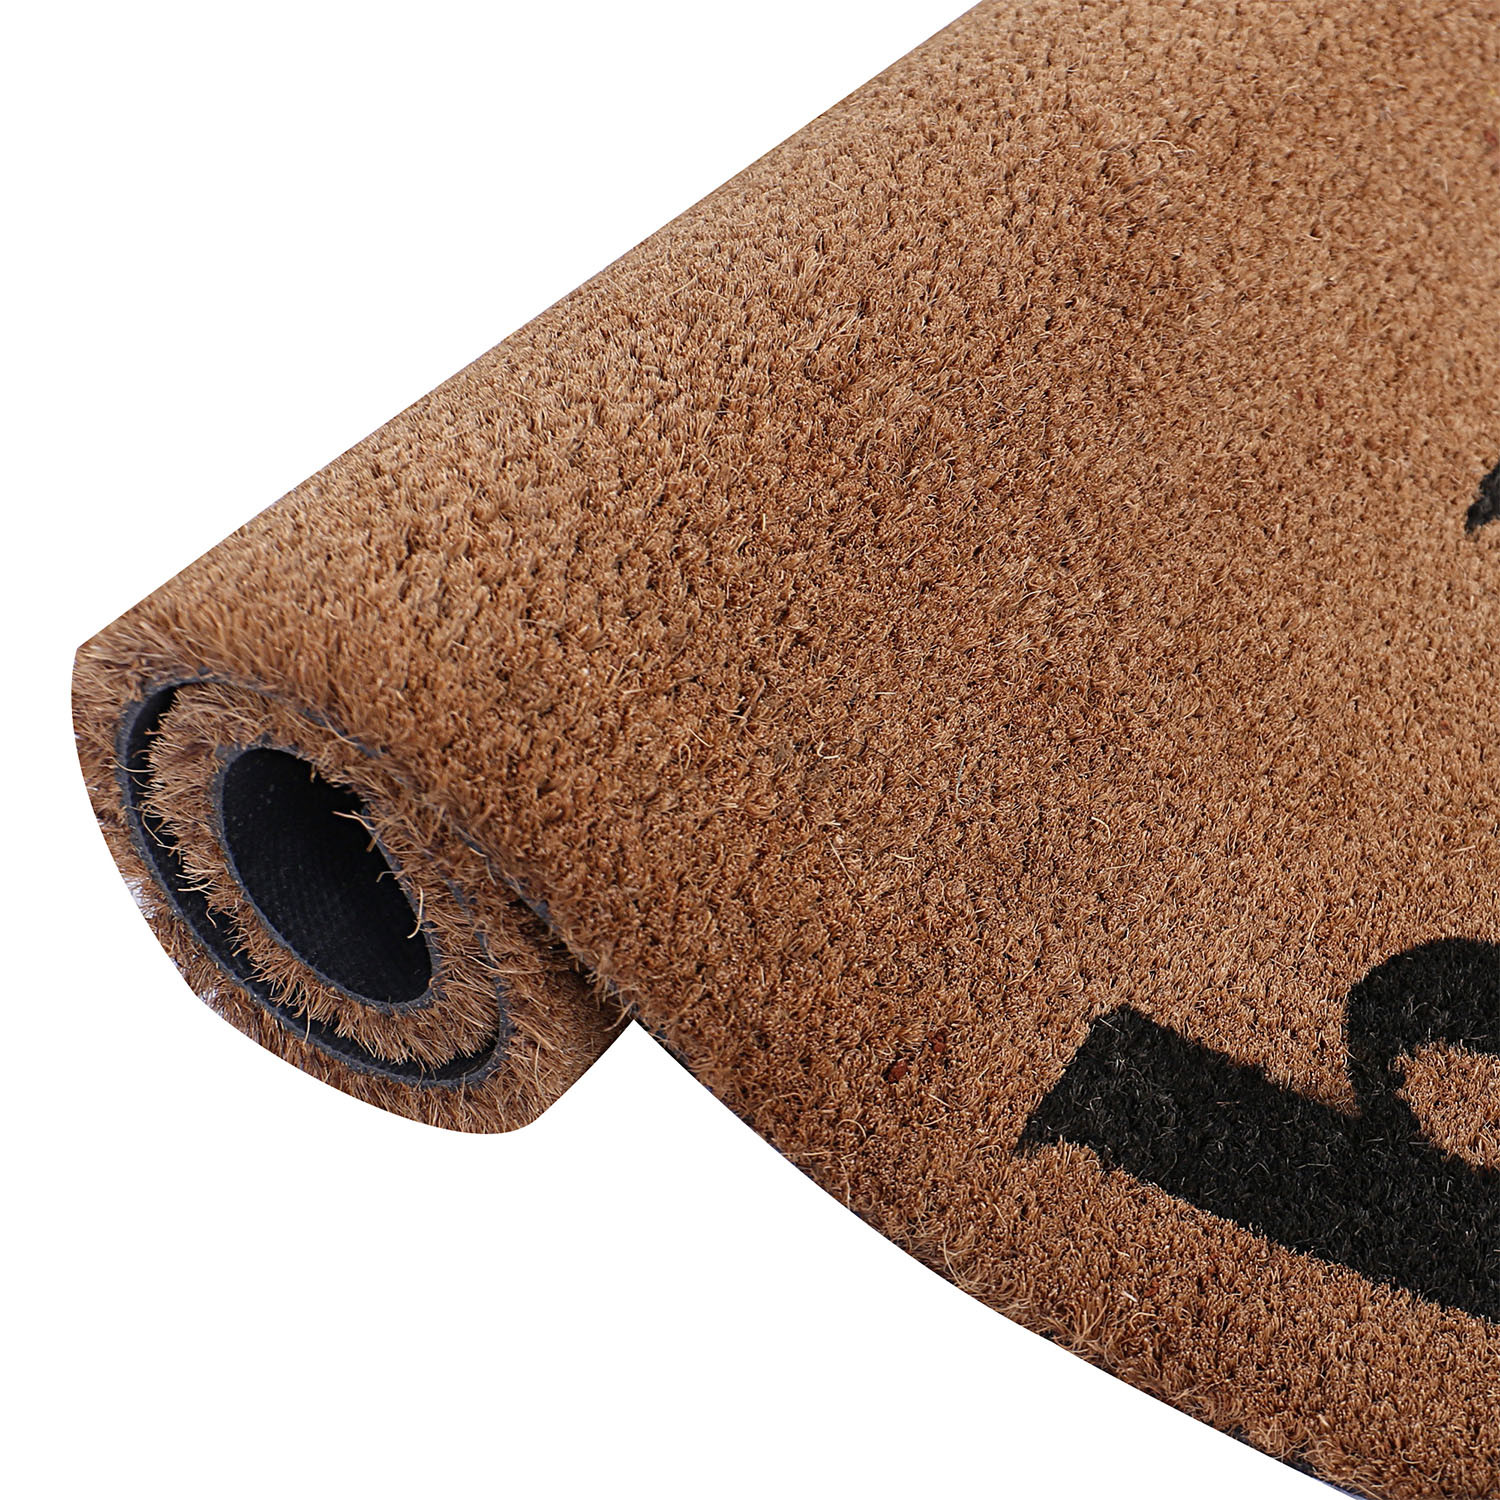 Kuber Industries Door Mat|Polyethylene Durable & Anti-Slip Natural Hello Print Floor Mat|Rug For Indoor or Outdoor, 30x20 Inch (Brown)